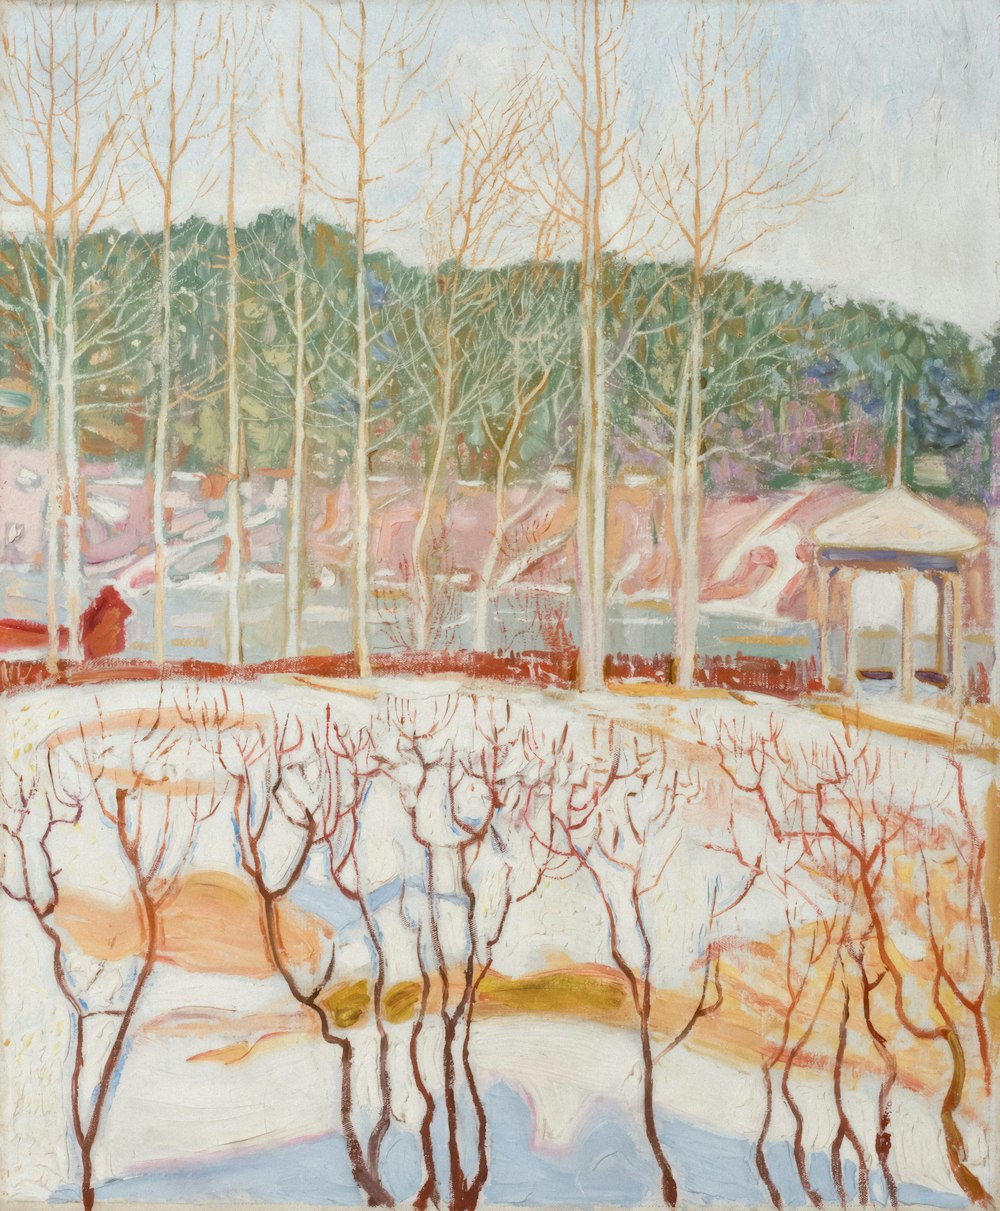 una pintura de un paisaje nevado con árboles